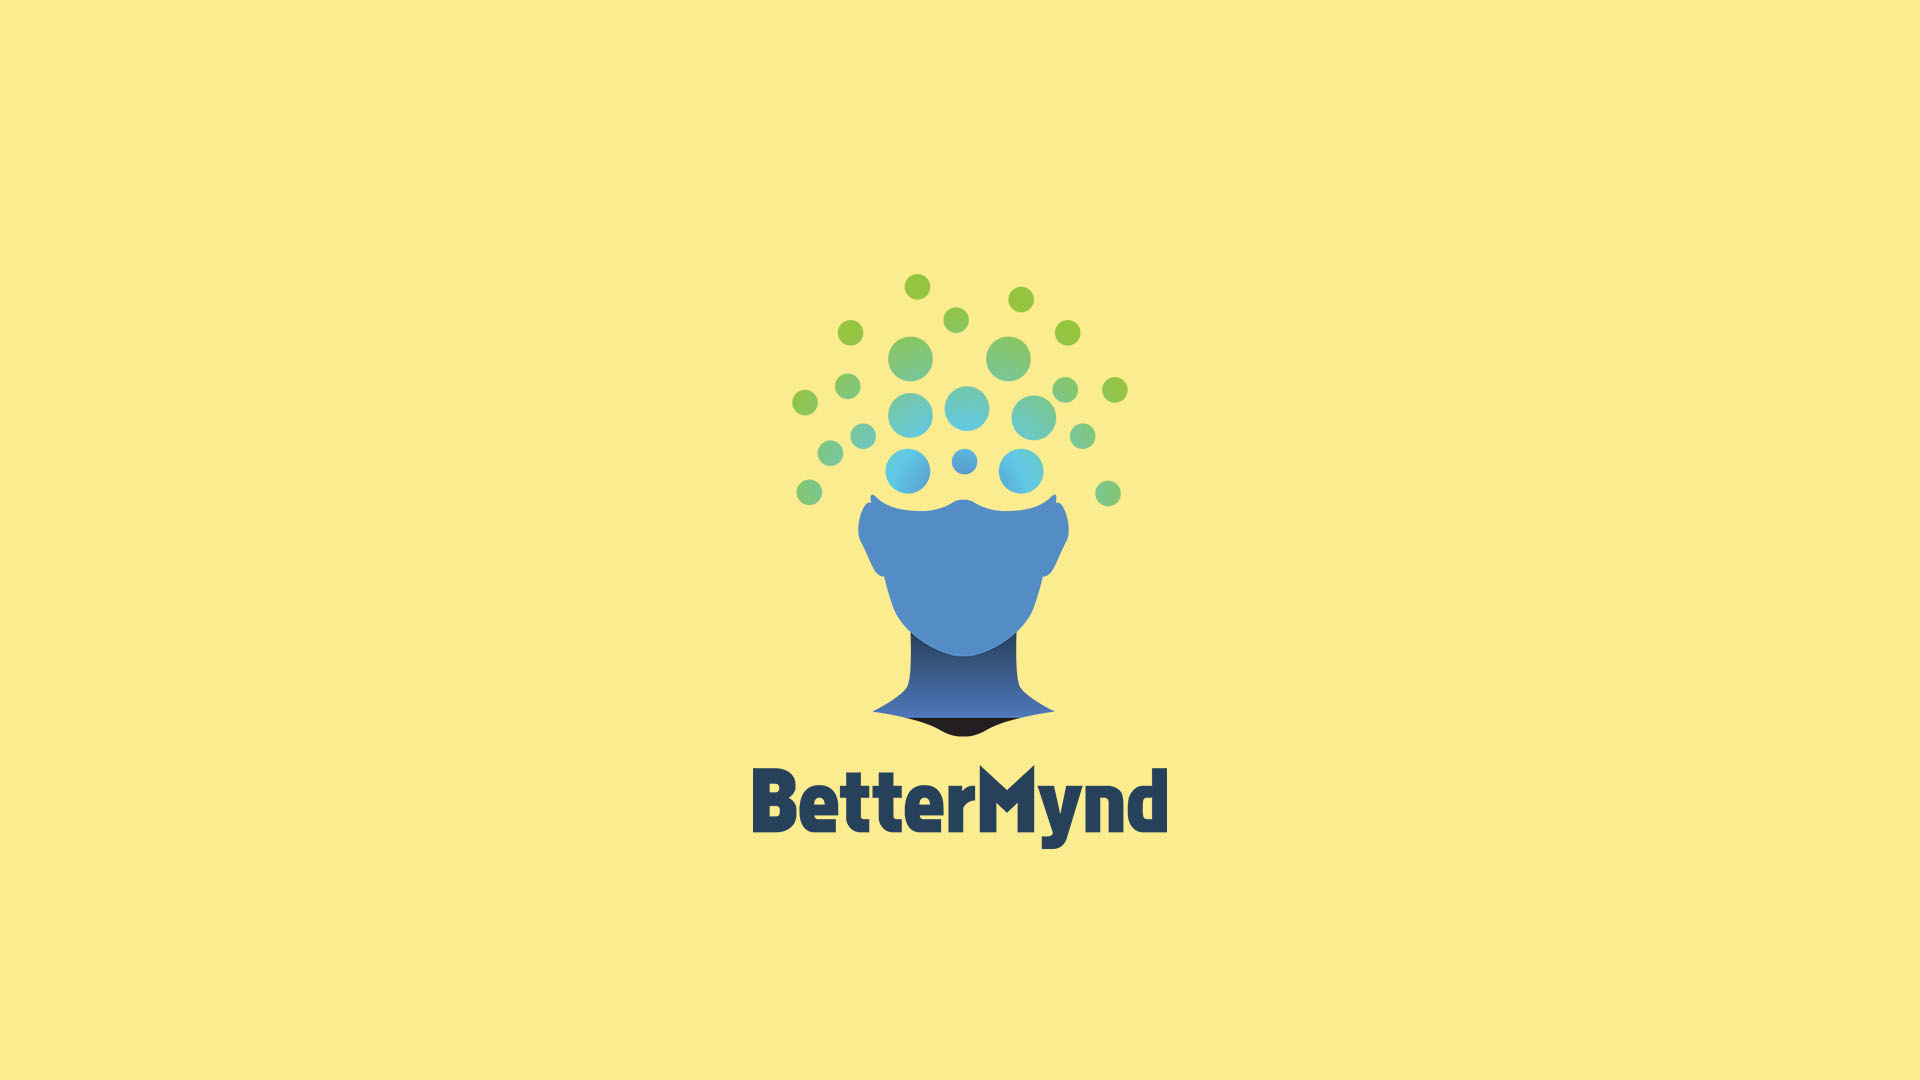 BetterMynd logo